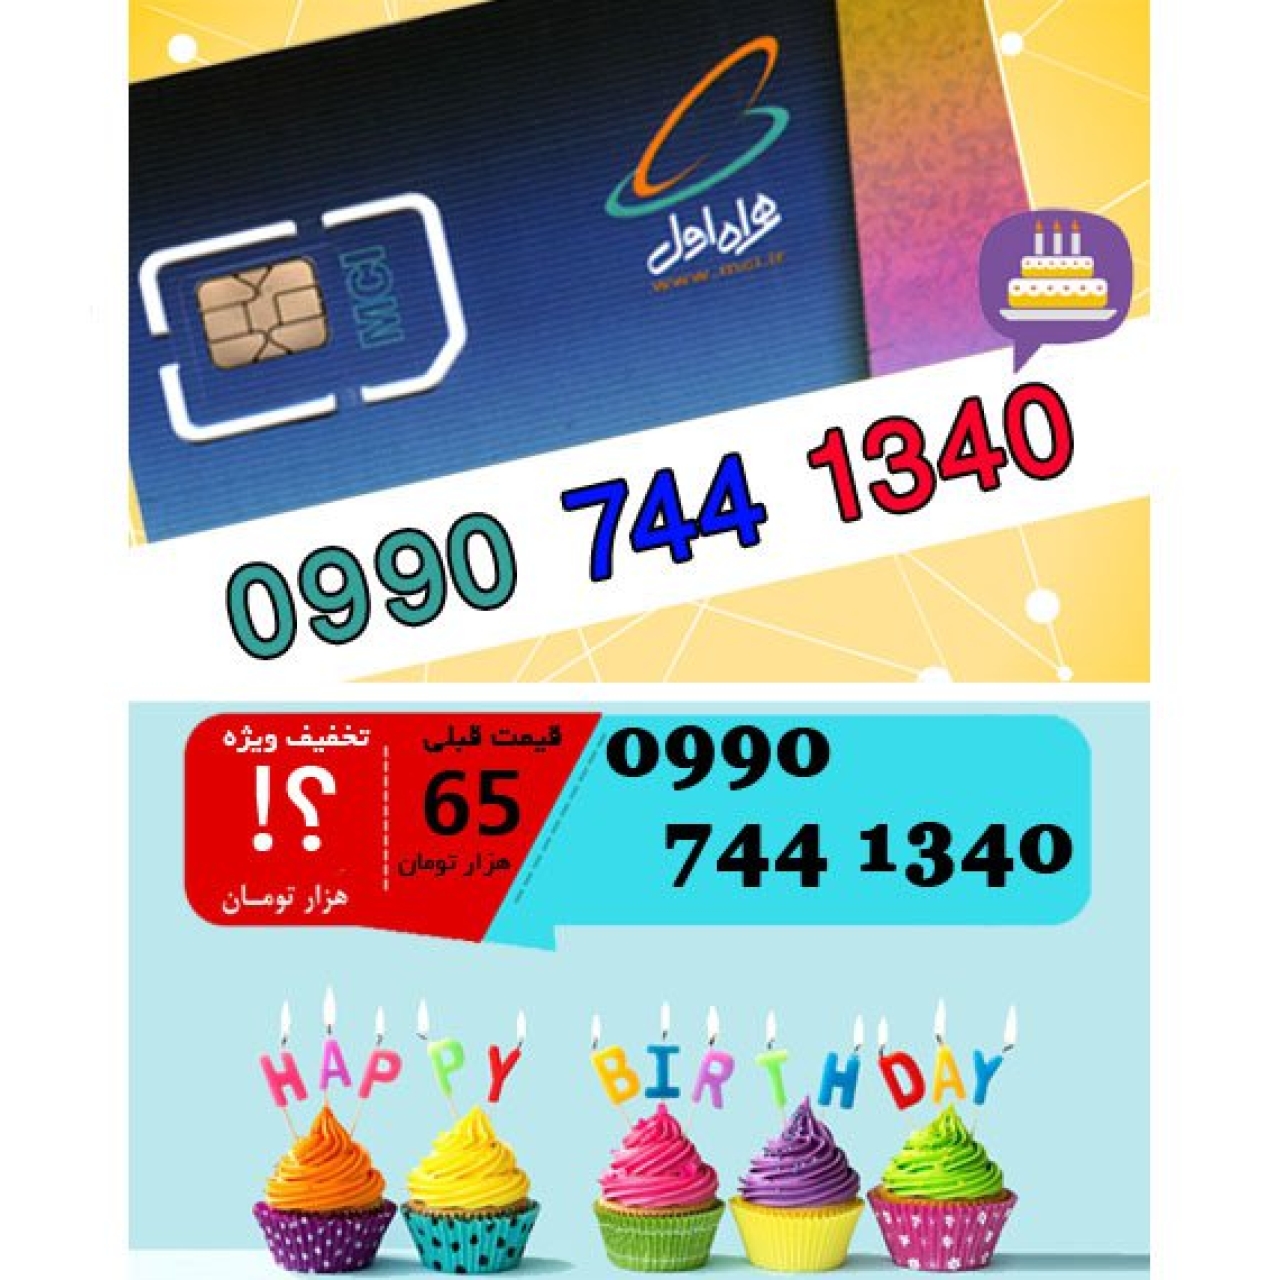 سیم کارت اعتباری همراه اول 09907441340 تاریخ تولد